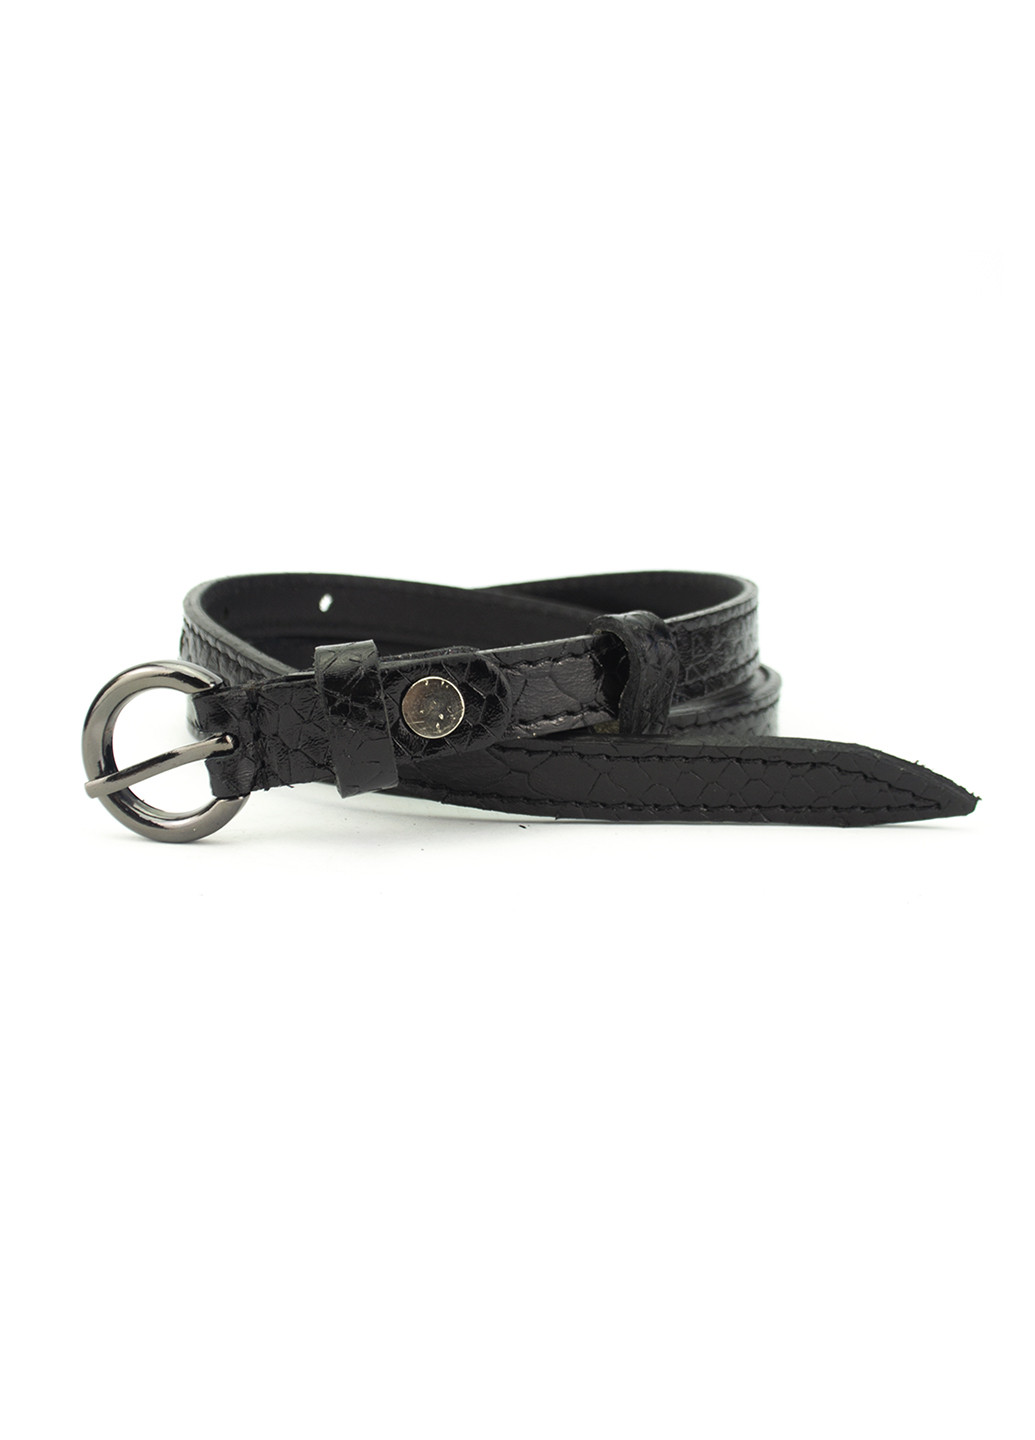 Ремень кожаный женский узкий черный питон PS-1553 black (105 см) Puos (249059145)